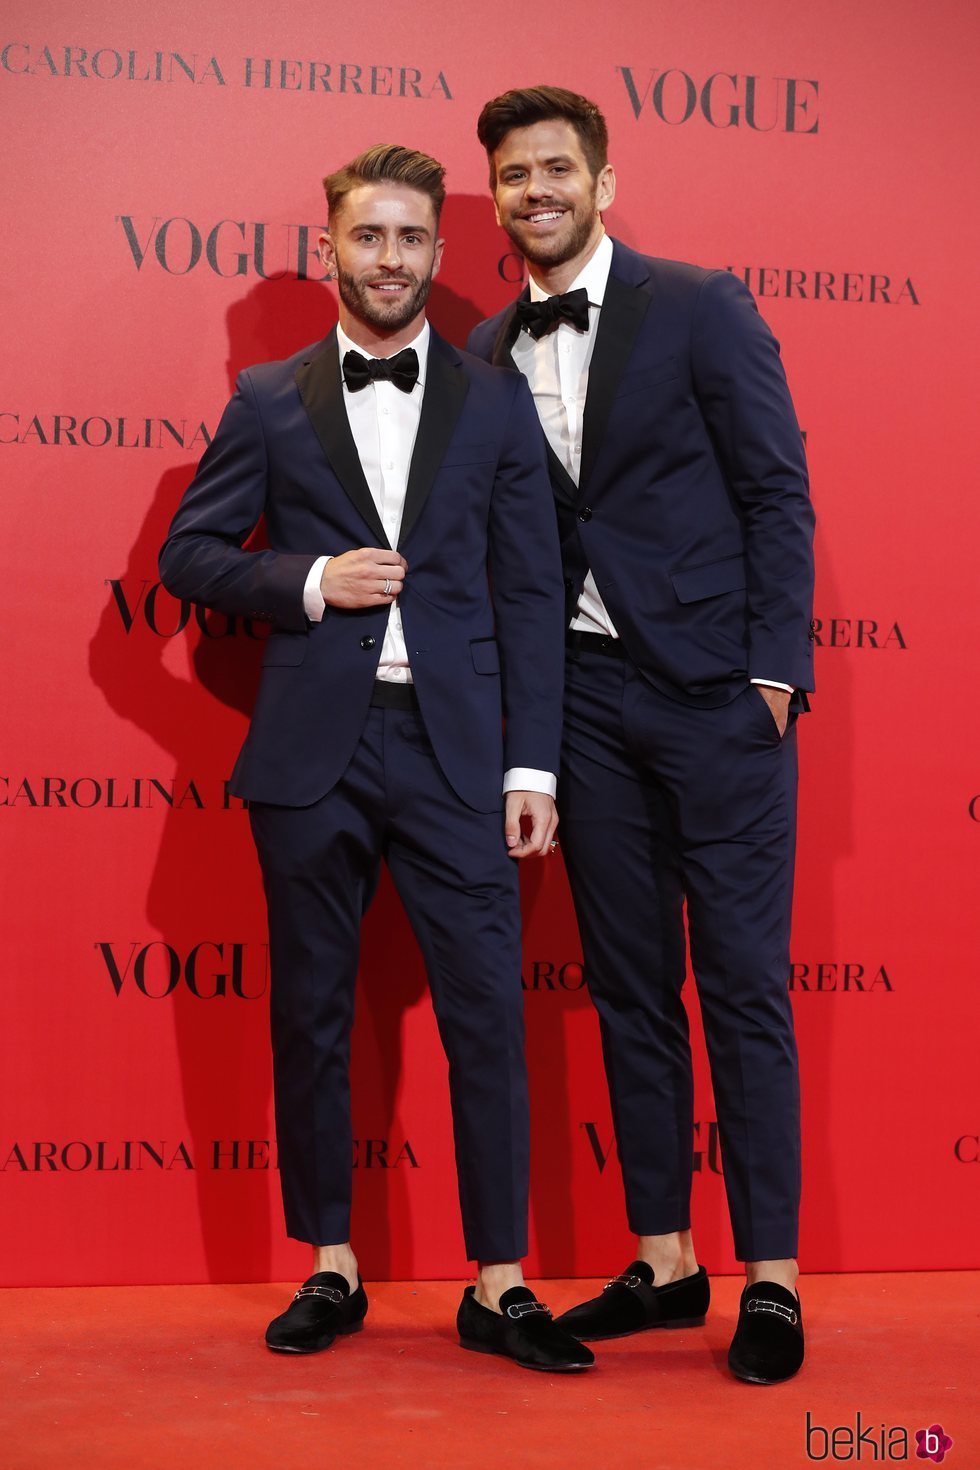 Pelayo Díaz y Andy McDougall en la fiesta del 30 aniversario de Vogue